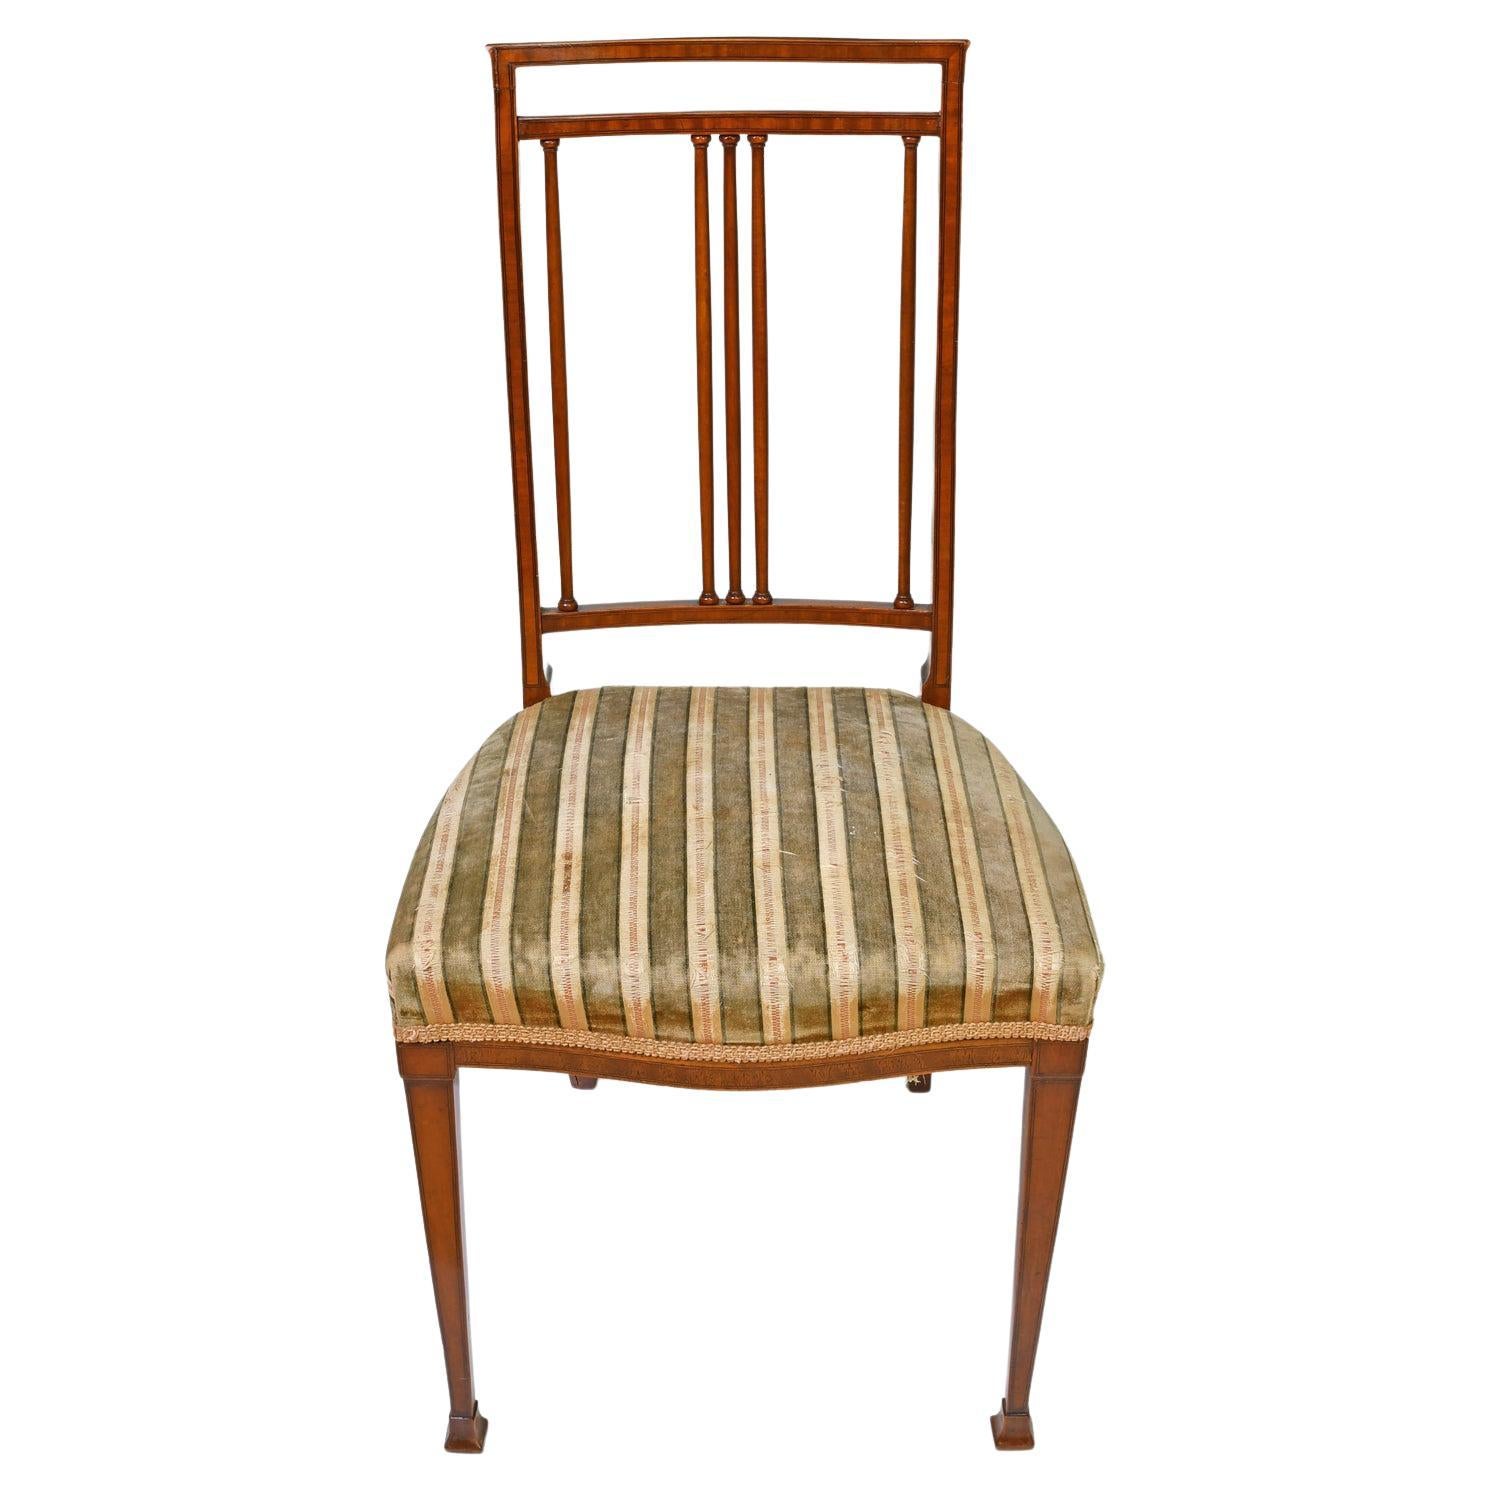 Deux chaises d'appoint en acajou avec incrustations de lignes ébonisées, issues du mouvement esthétique anglais. Ce modèle présente un choix exquis de bois, un haut dossier concave avec trois colonnes verticales finement tournées le long du centre